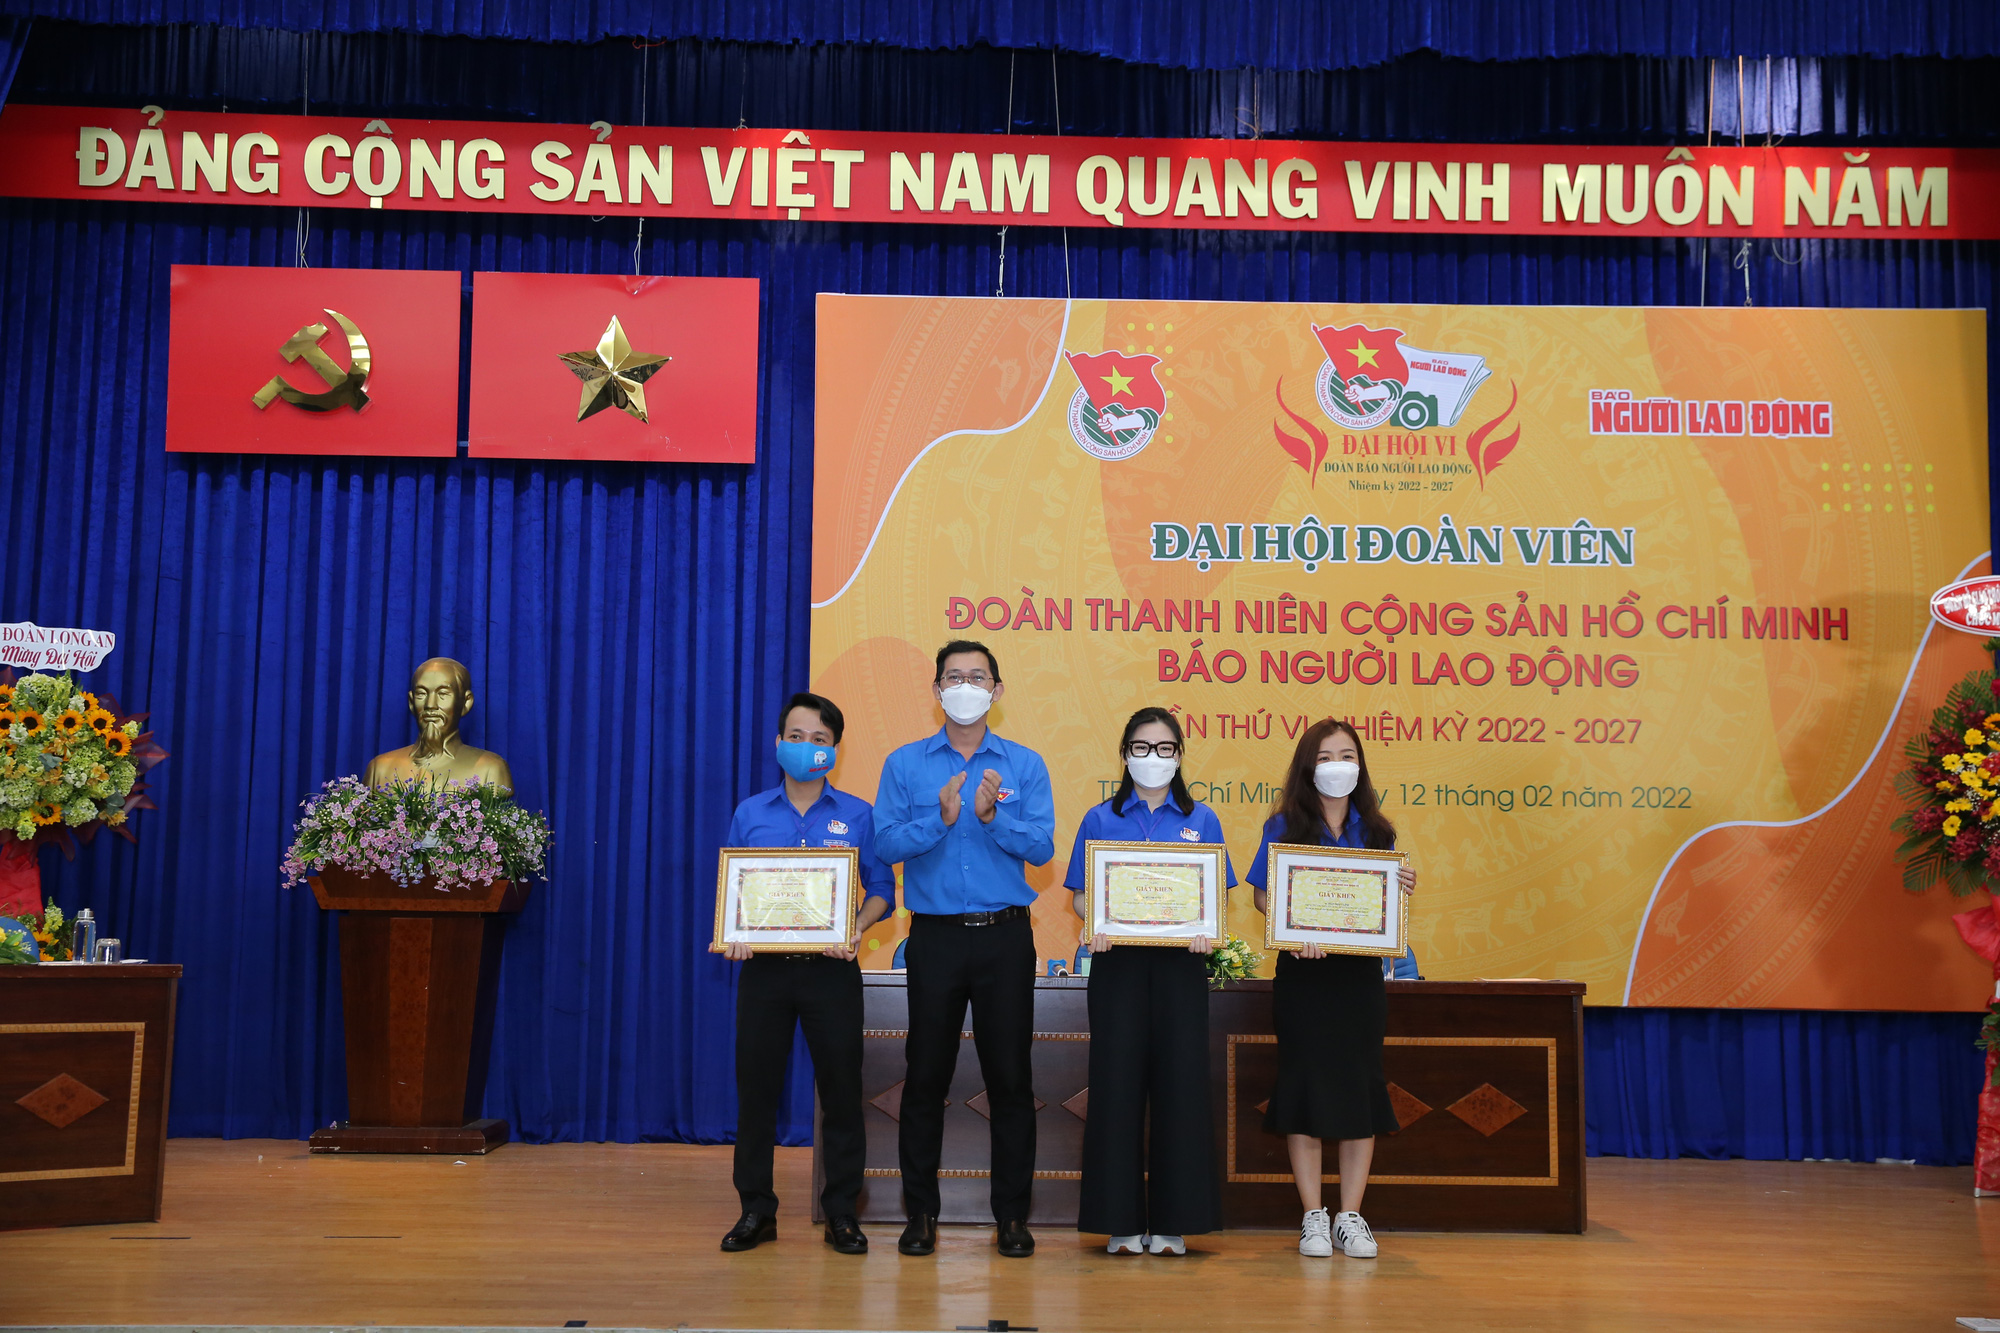 Đường cờ Tổ quốc sẽ là nơi tôn vinh giá trị của lá cờ đỏ sao vàng, tôn lên tình yêu nước, sự tự hào về dân tộc và sự đoàn kết của hơn 97 triệu người Việt Nam. Cùng nhau đứng trên đường cờ, chúng ta tự tin tiến lên với những ước mơ, hoài bão lớn lao cho đất nước và gia đình mình.